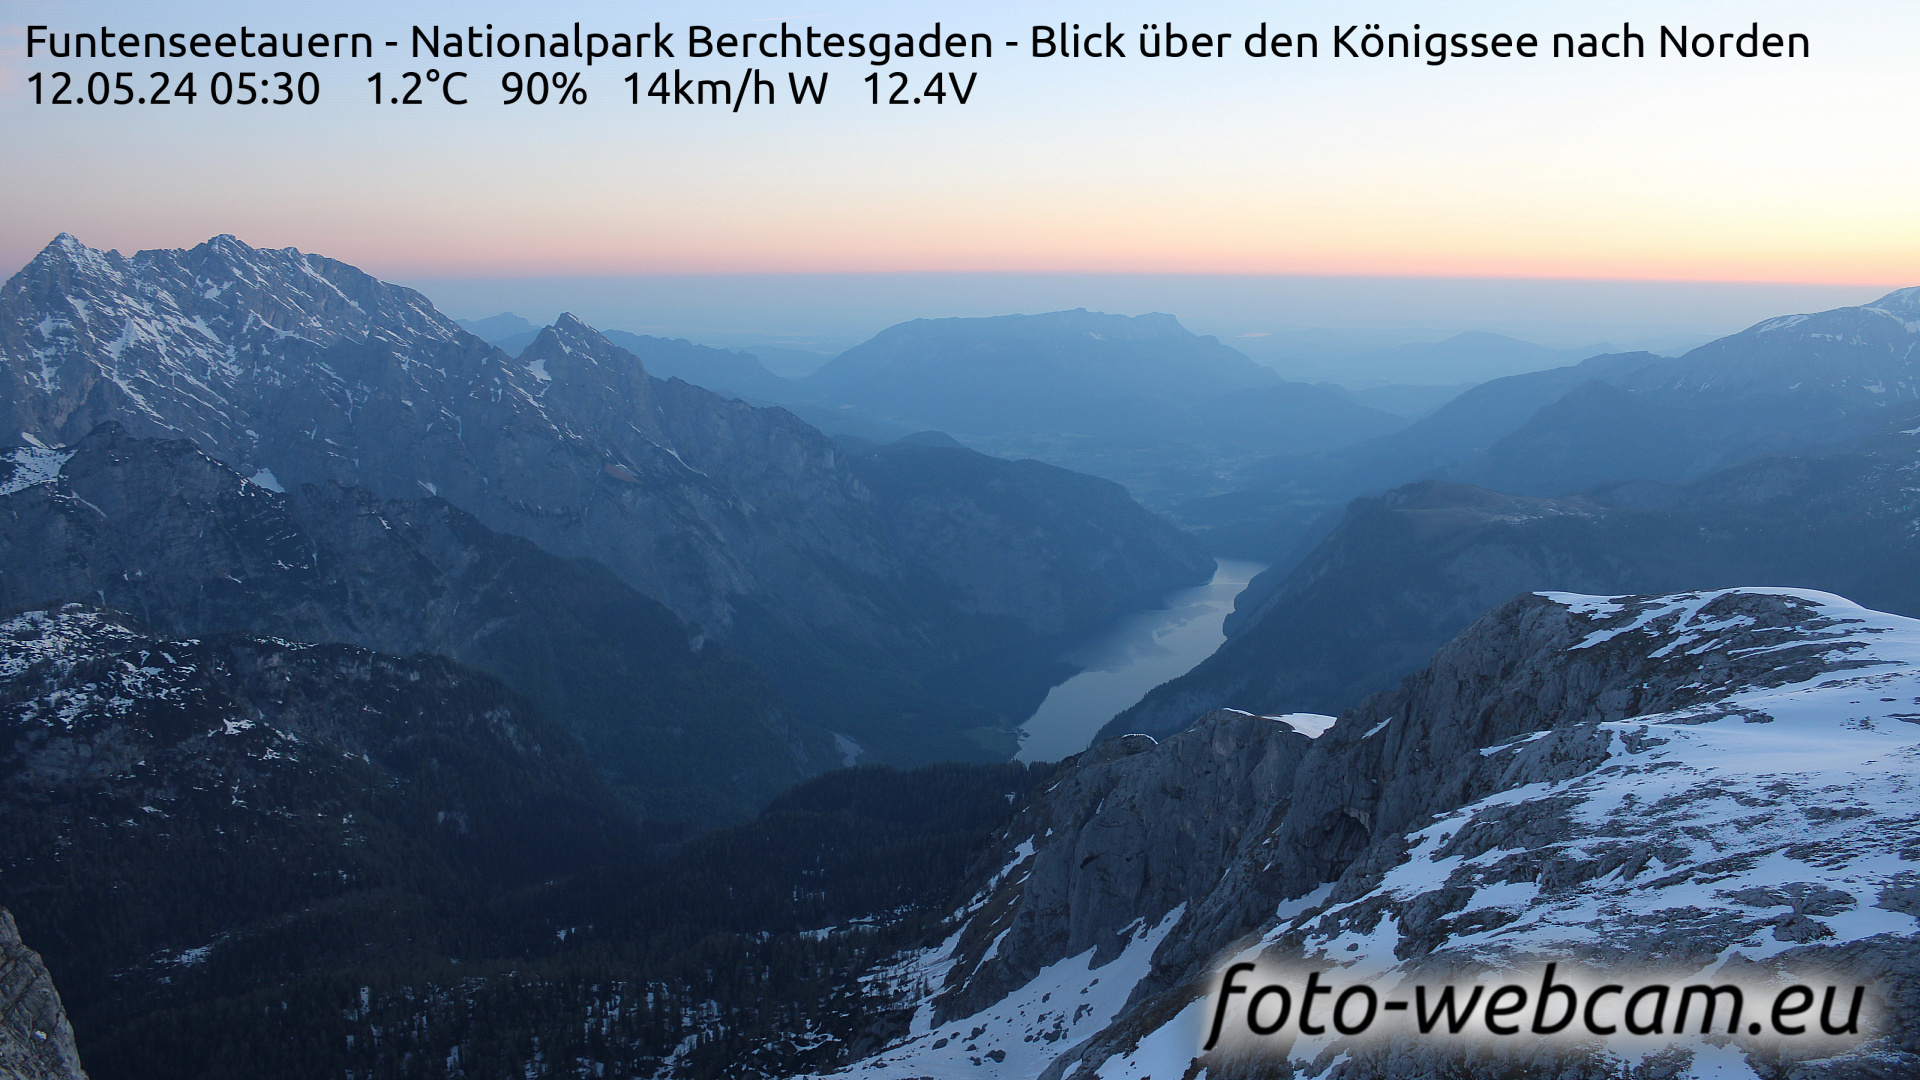 Berchtesgaden Do. 05:48